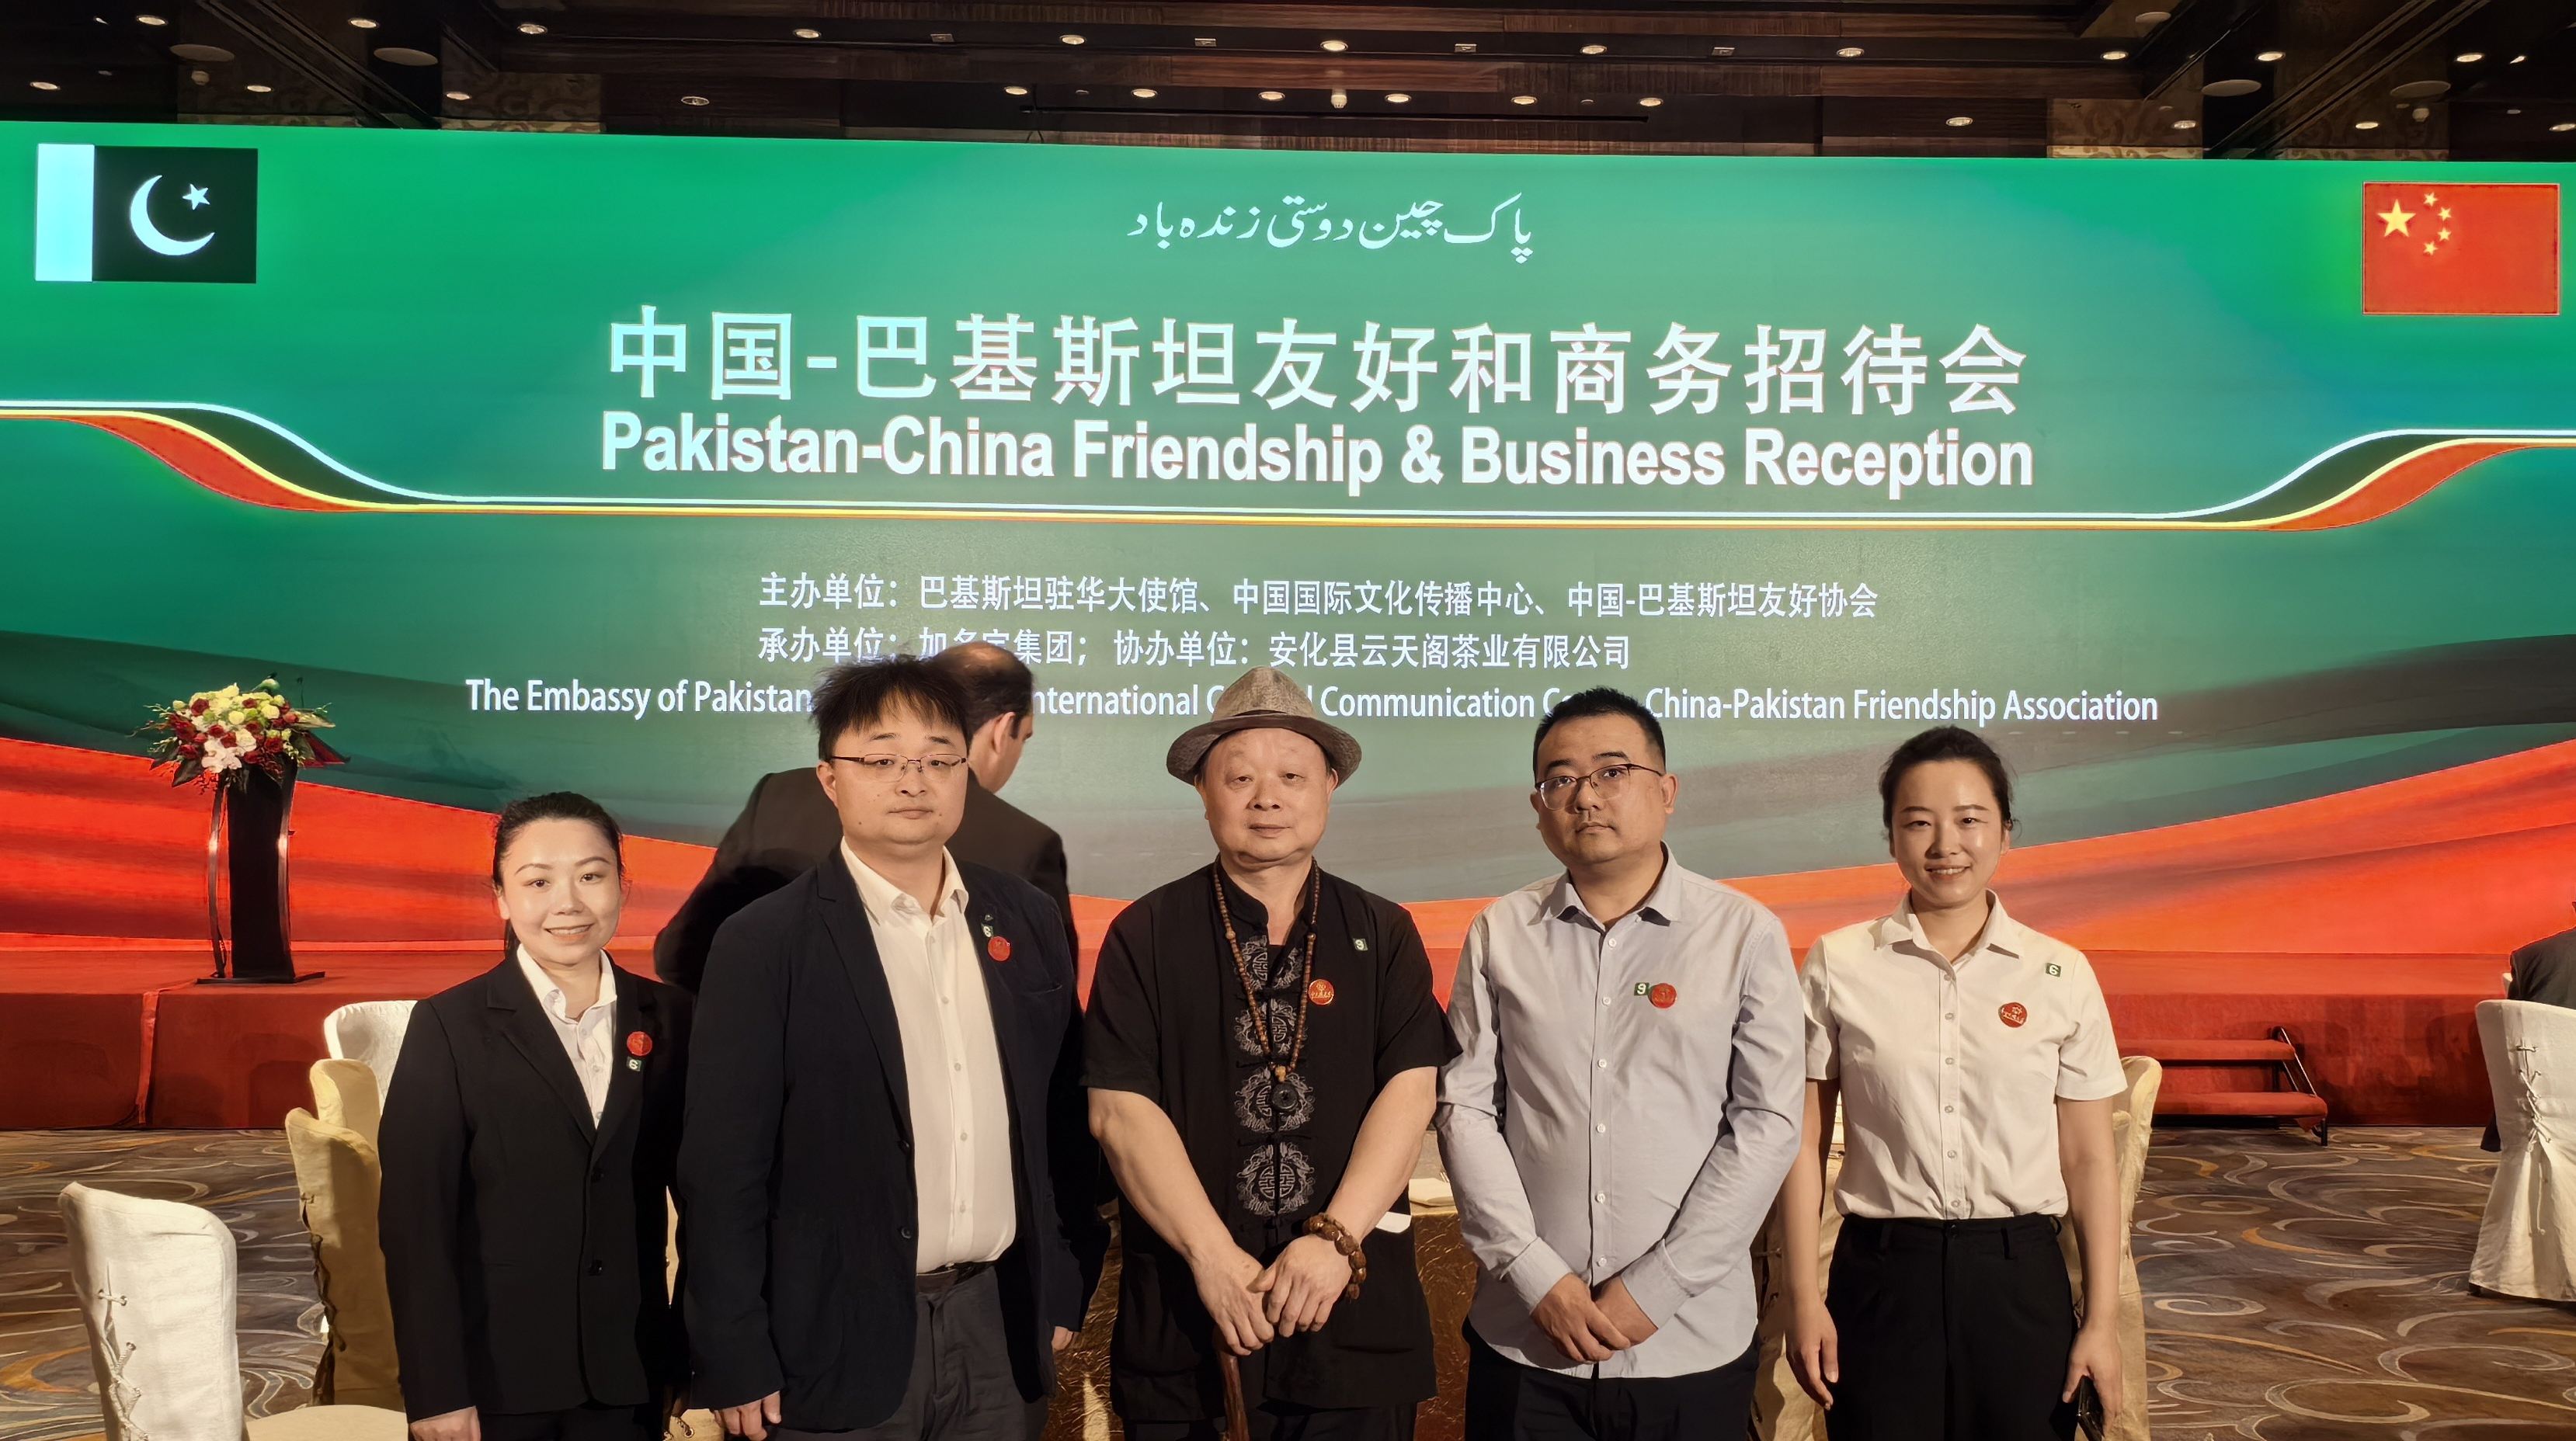 安化黑茶獻禮中國-巴基斯坦友好和商務招待會